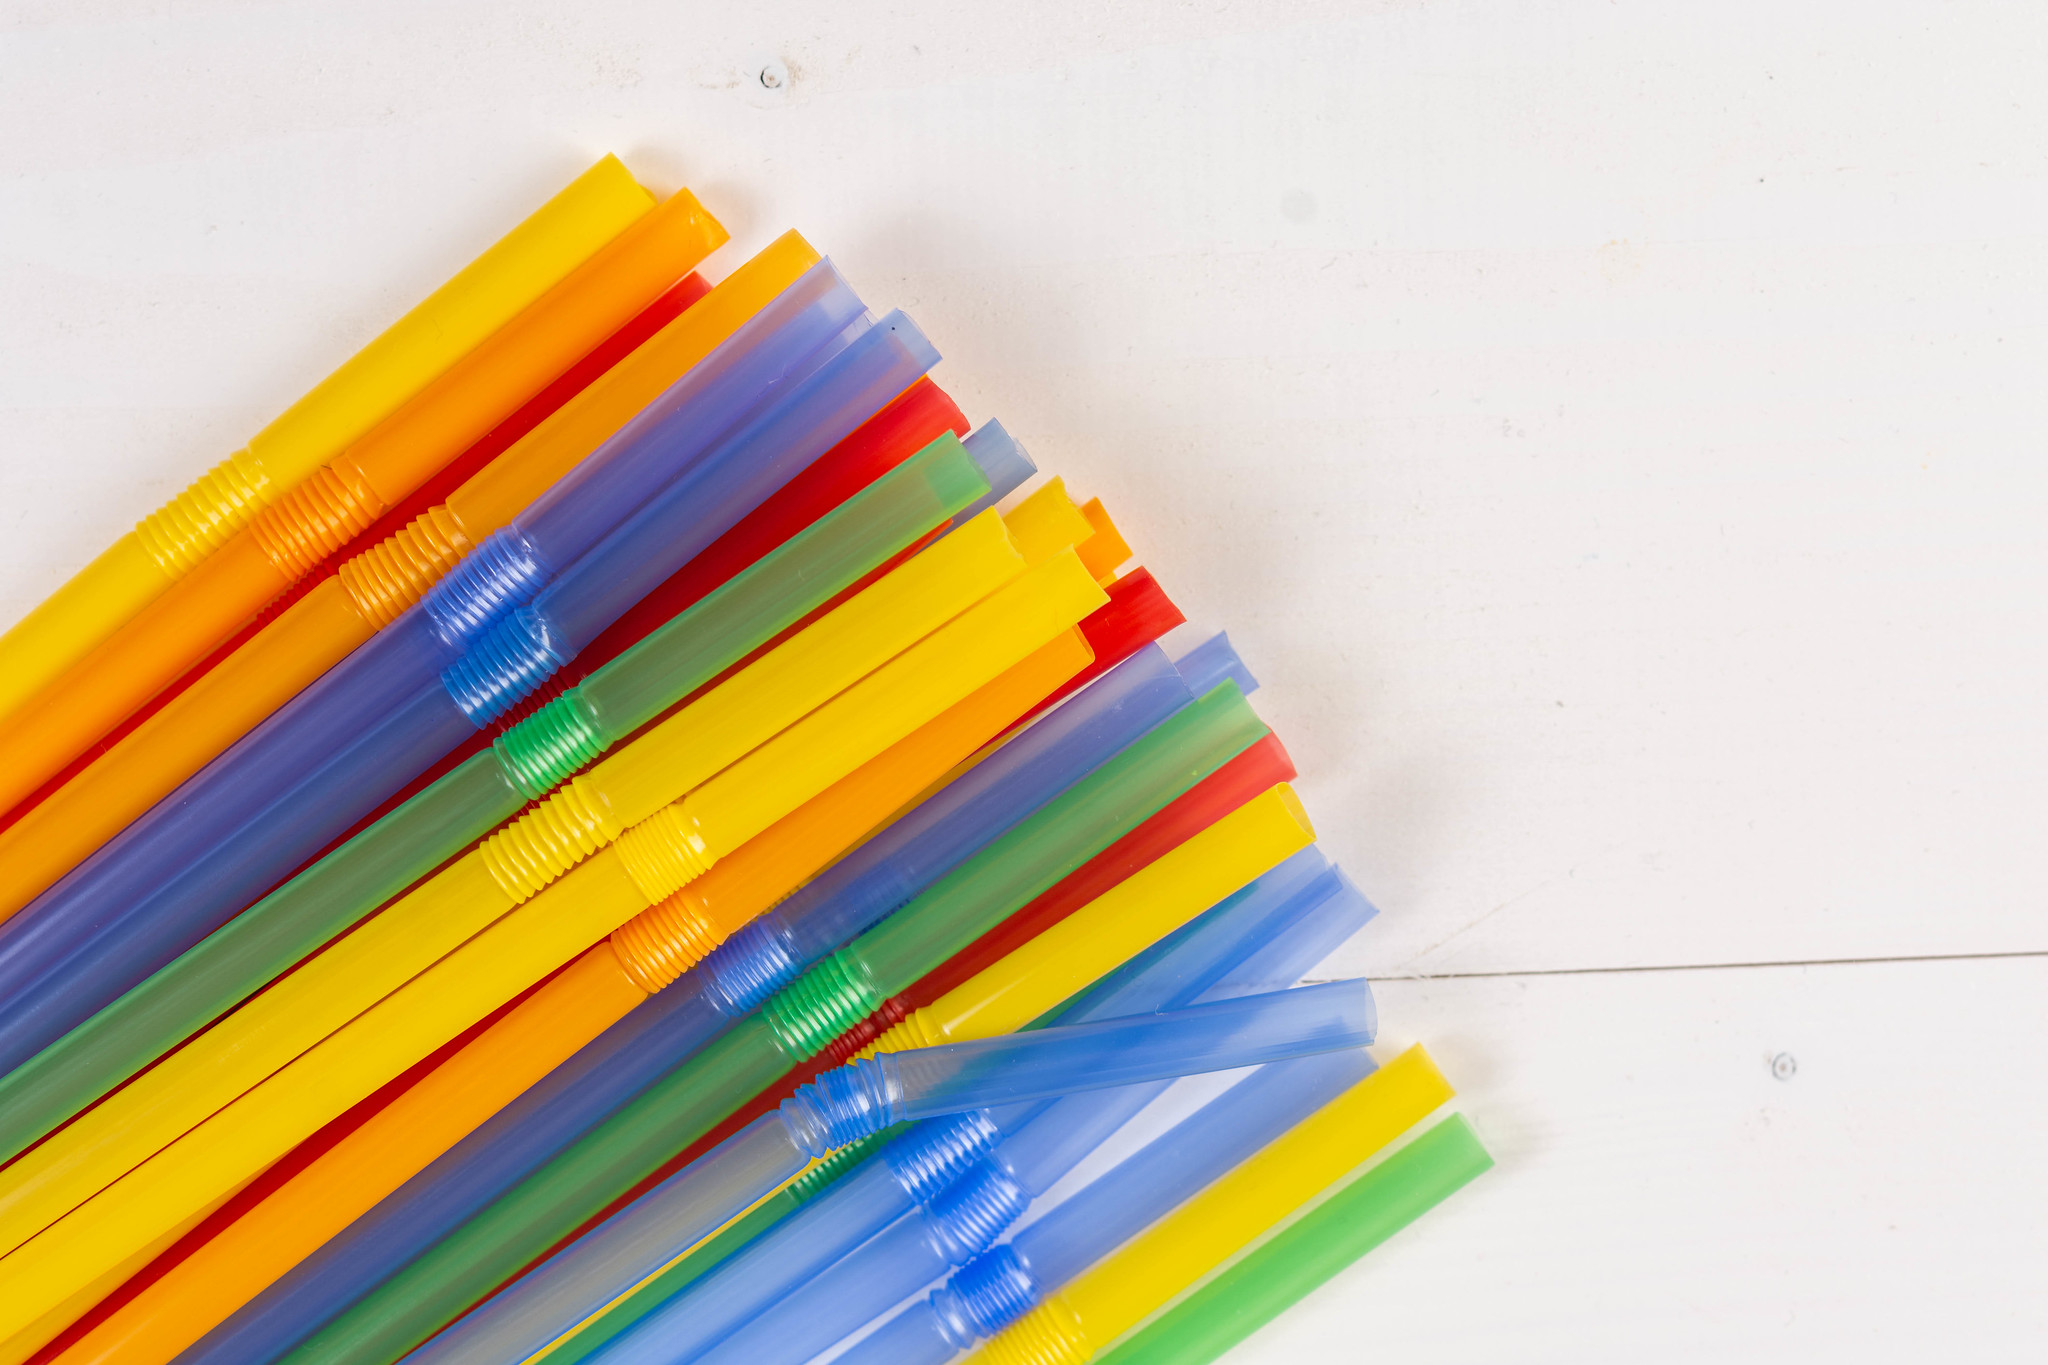 Pailles en plastique colorées | Source : Flickr.com